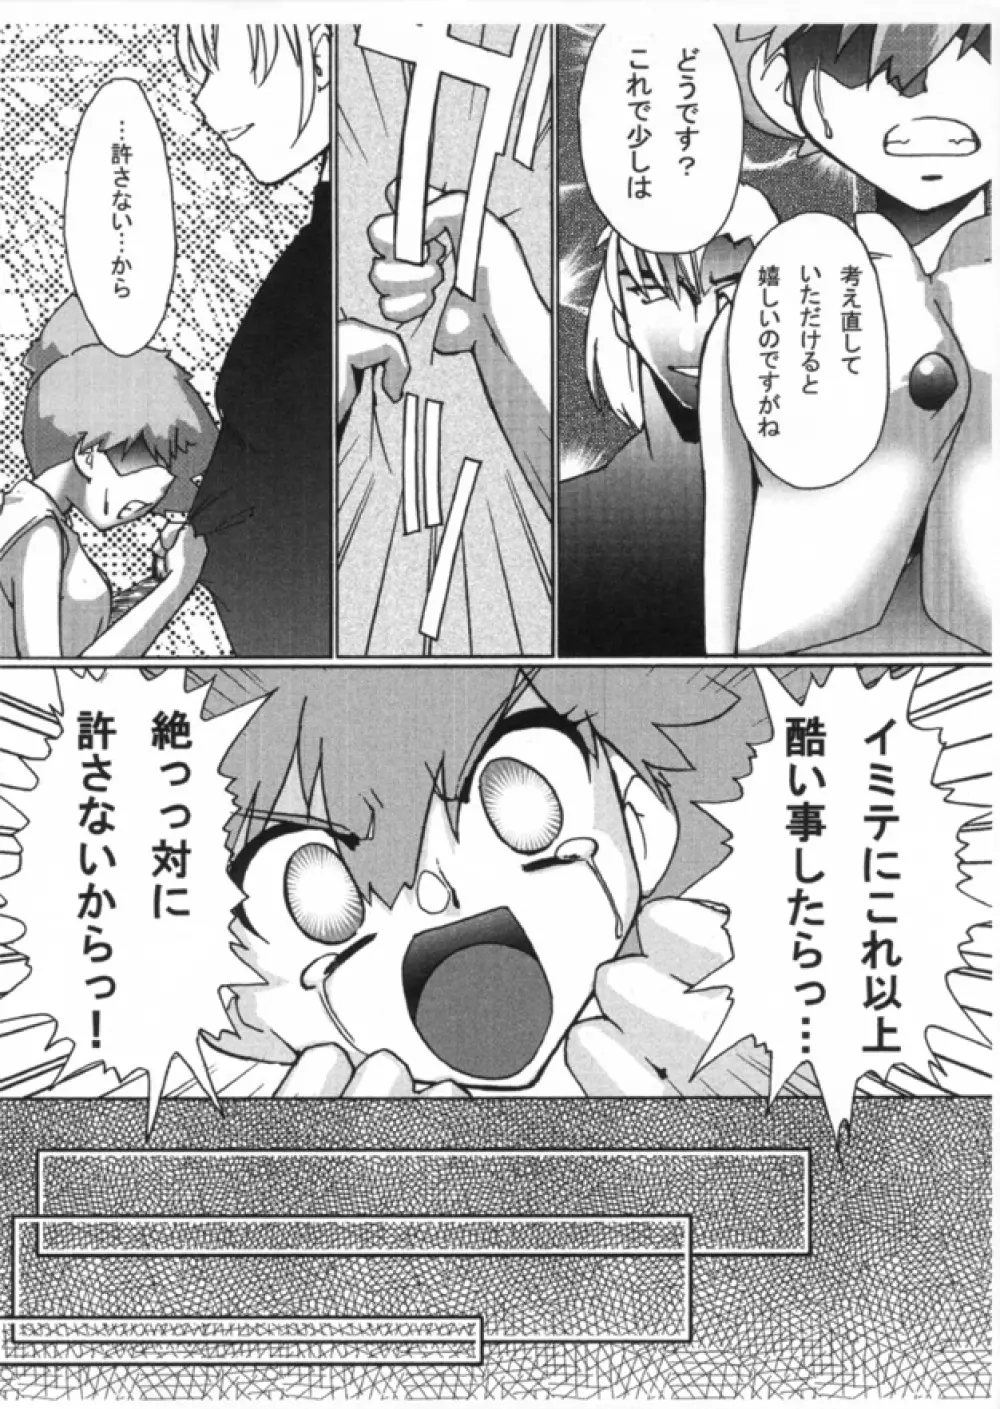 KASUMIX XPLOSION Kasumi Comic part5 38ページ